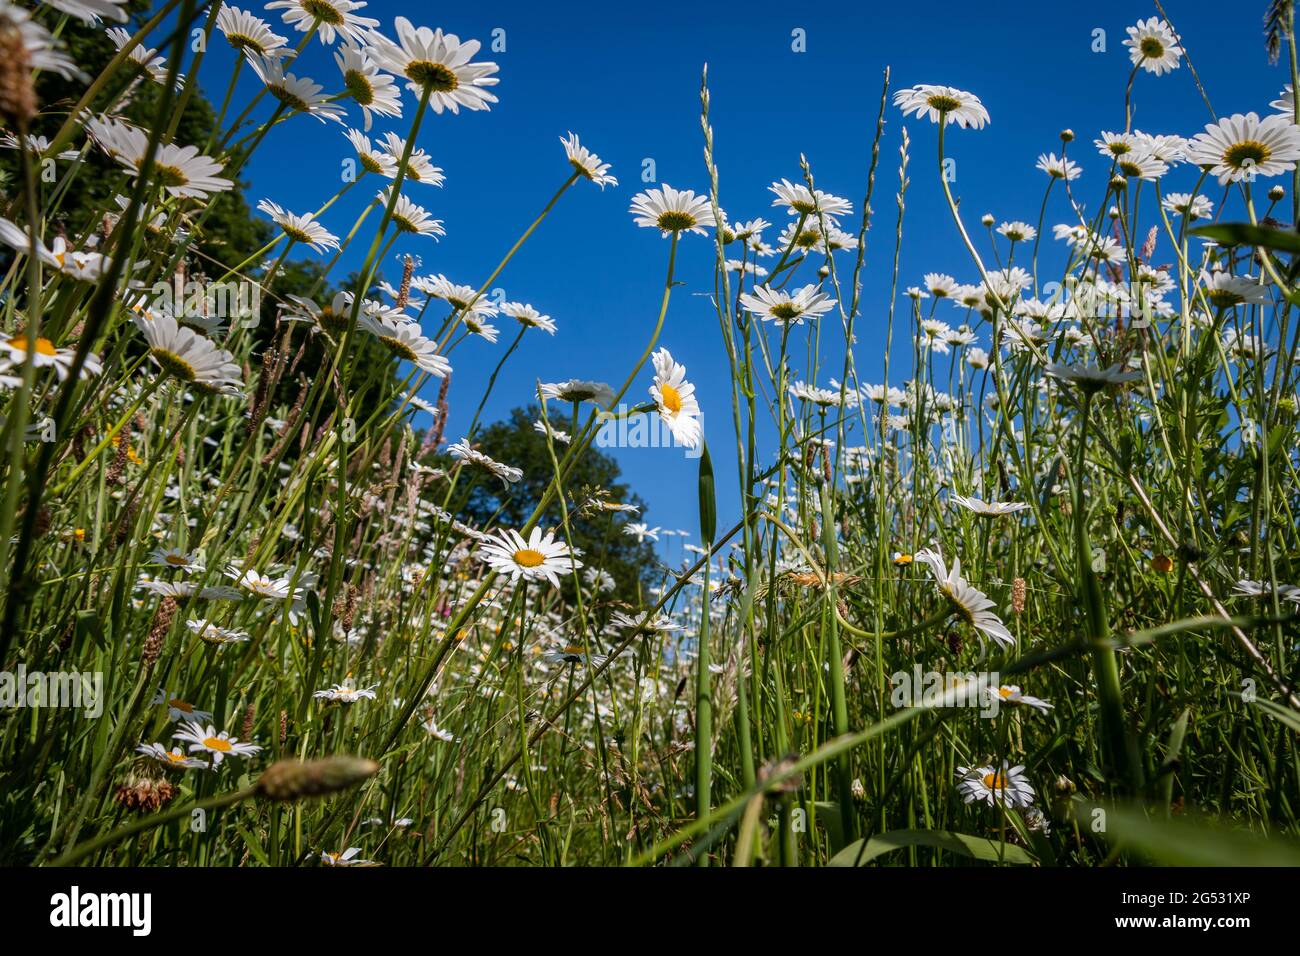 Belles belles pâquerettes blanches dans le champ, près de la réglisse Zuidwolde, province de Drenthe, pays-Bas Banque D'Images